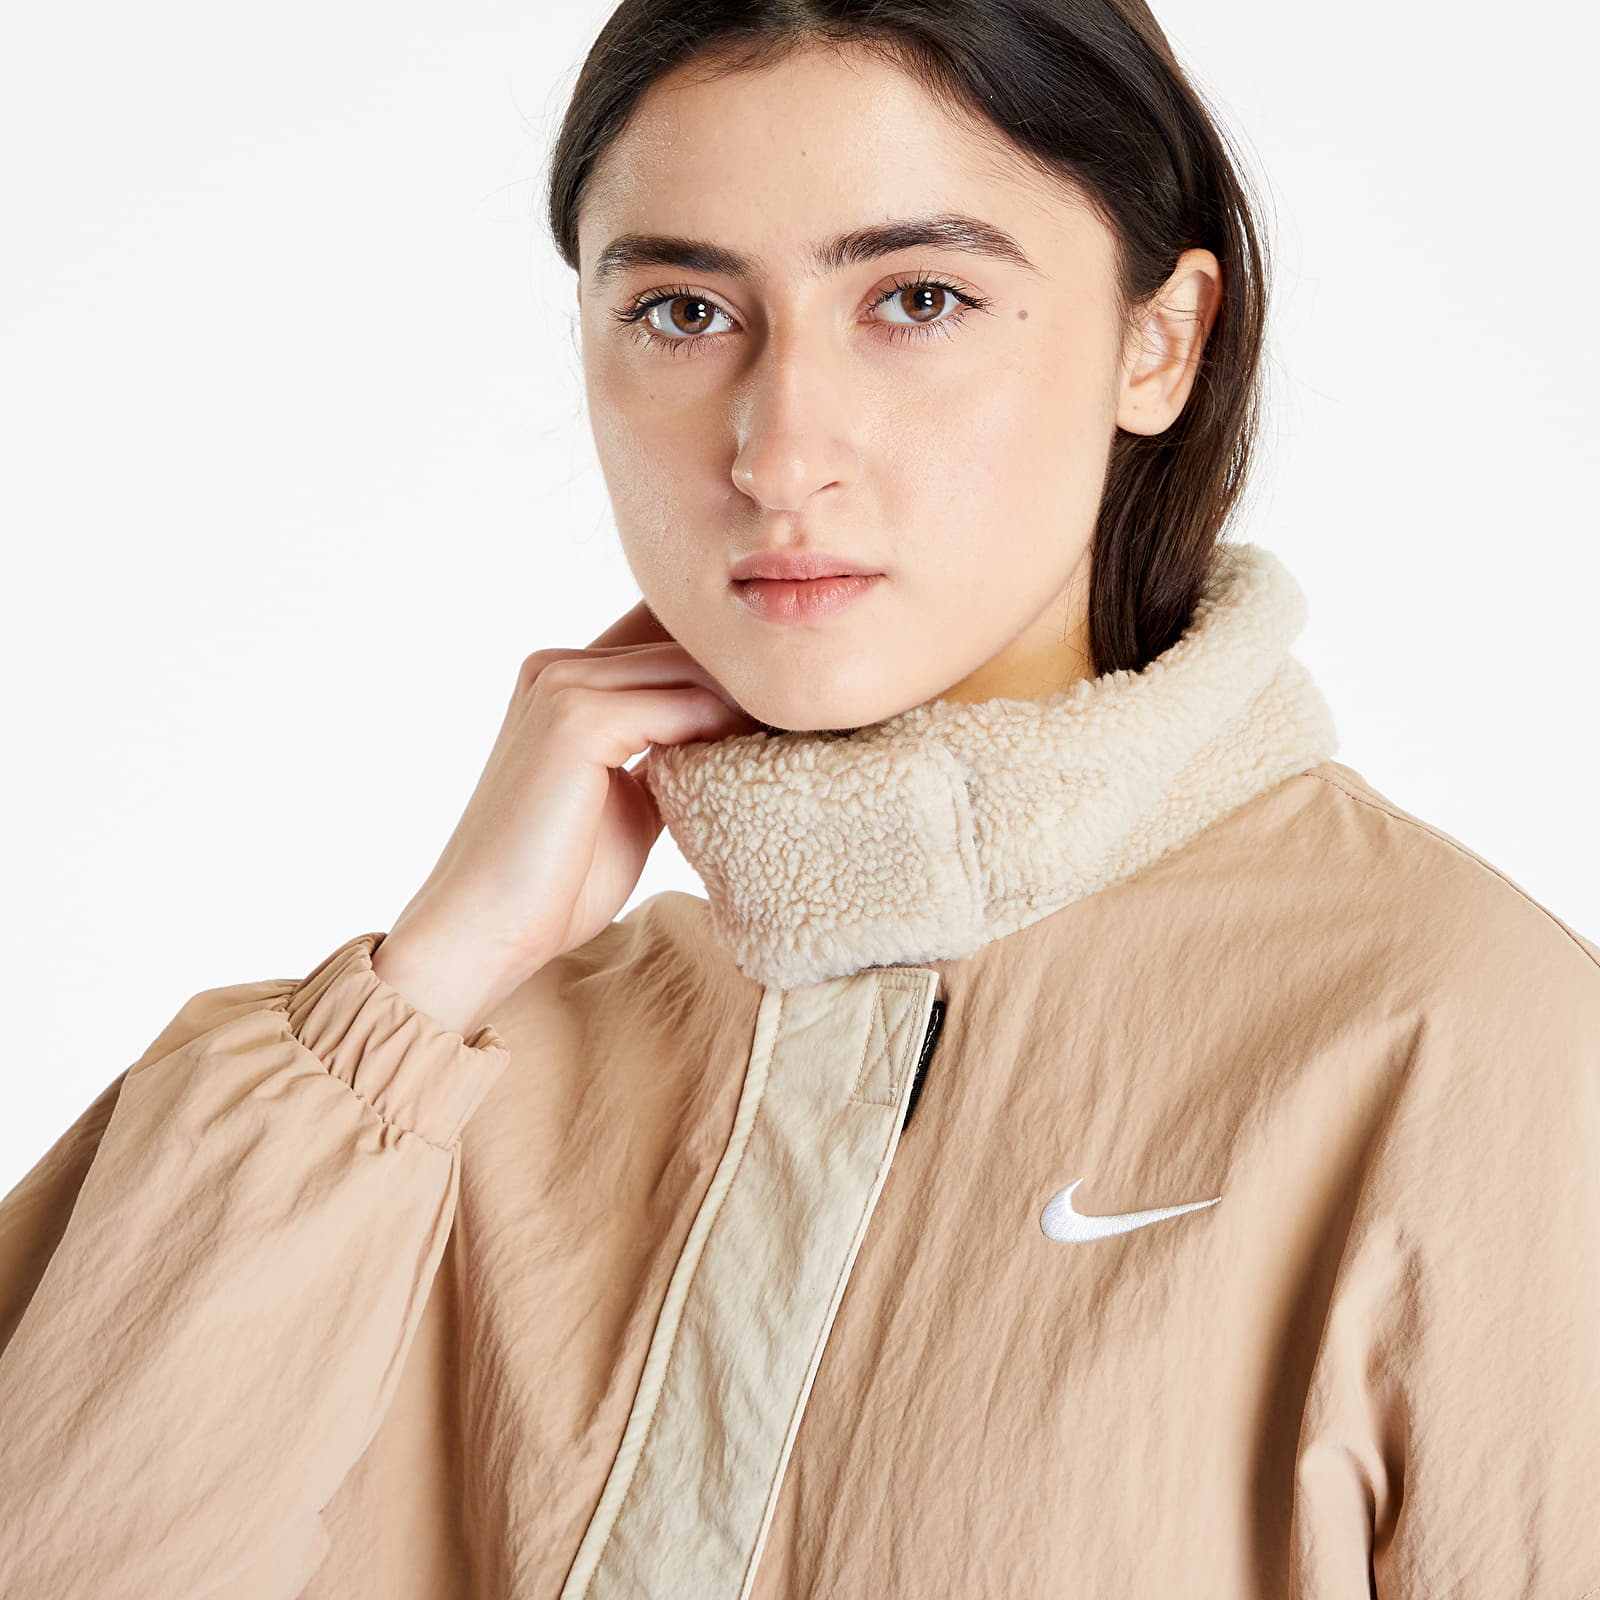 Jackets and Coats Nike Sportswear Essential Women's Woven Fleece